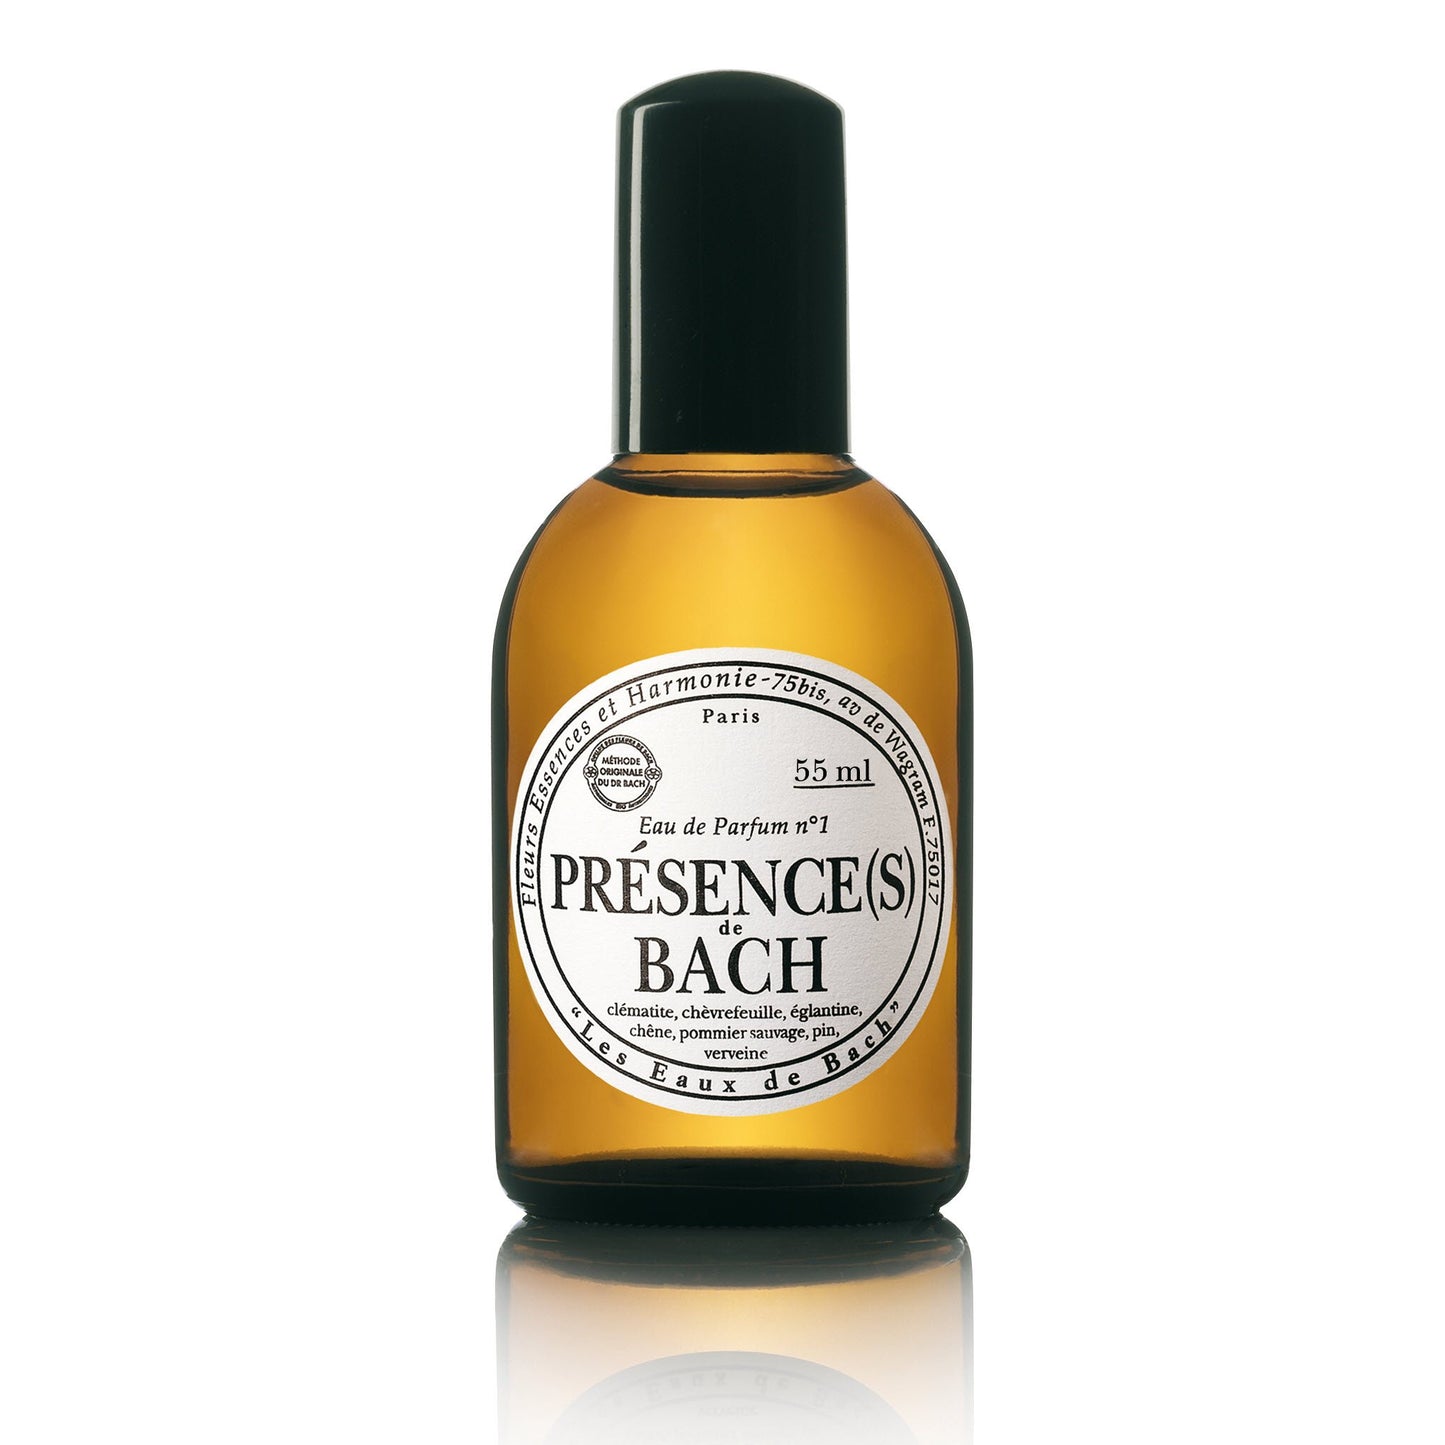 LES FLEURS DE BACH - Parfum Presence(s) de Bach - 55 ml